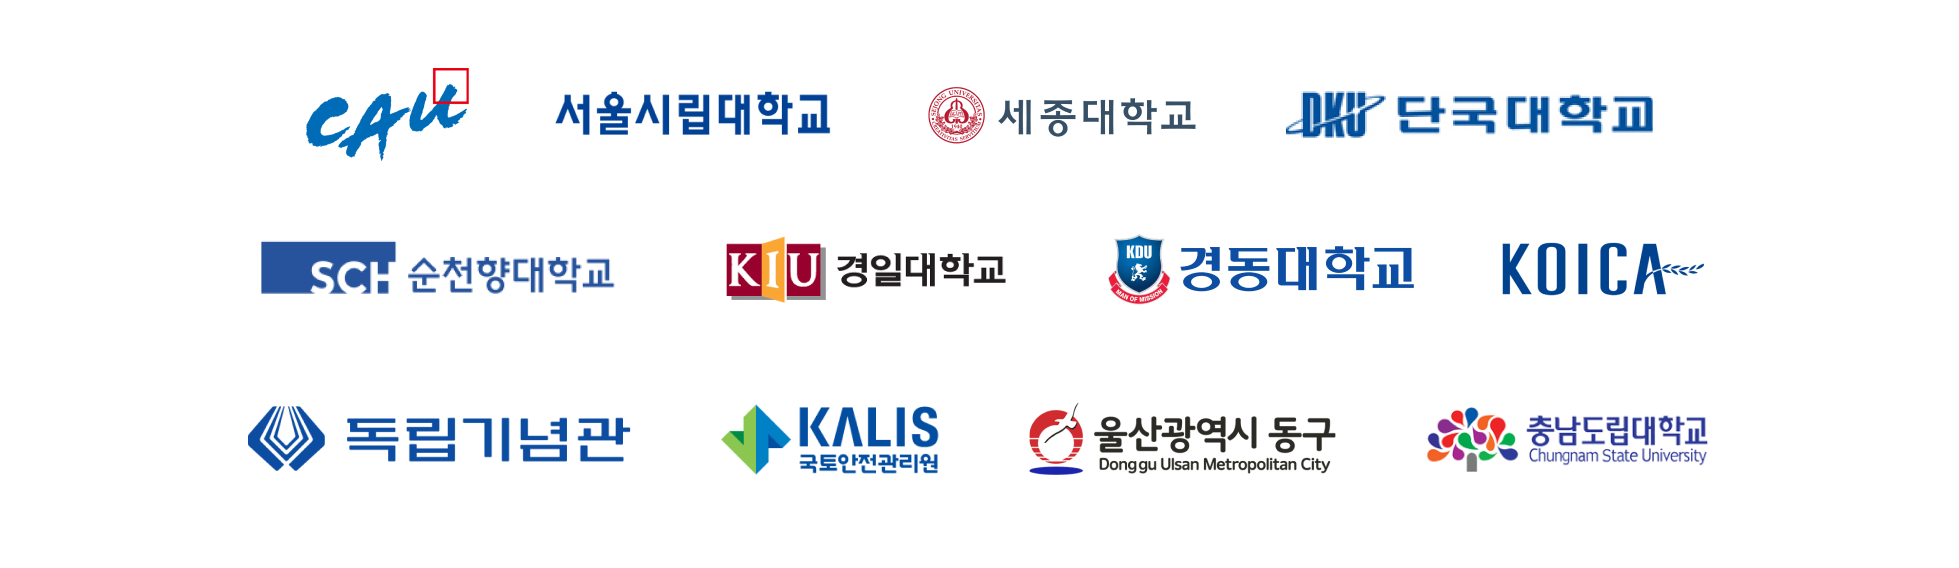 CK PASS 도입 대학/기관/기업 로고